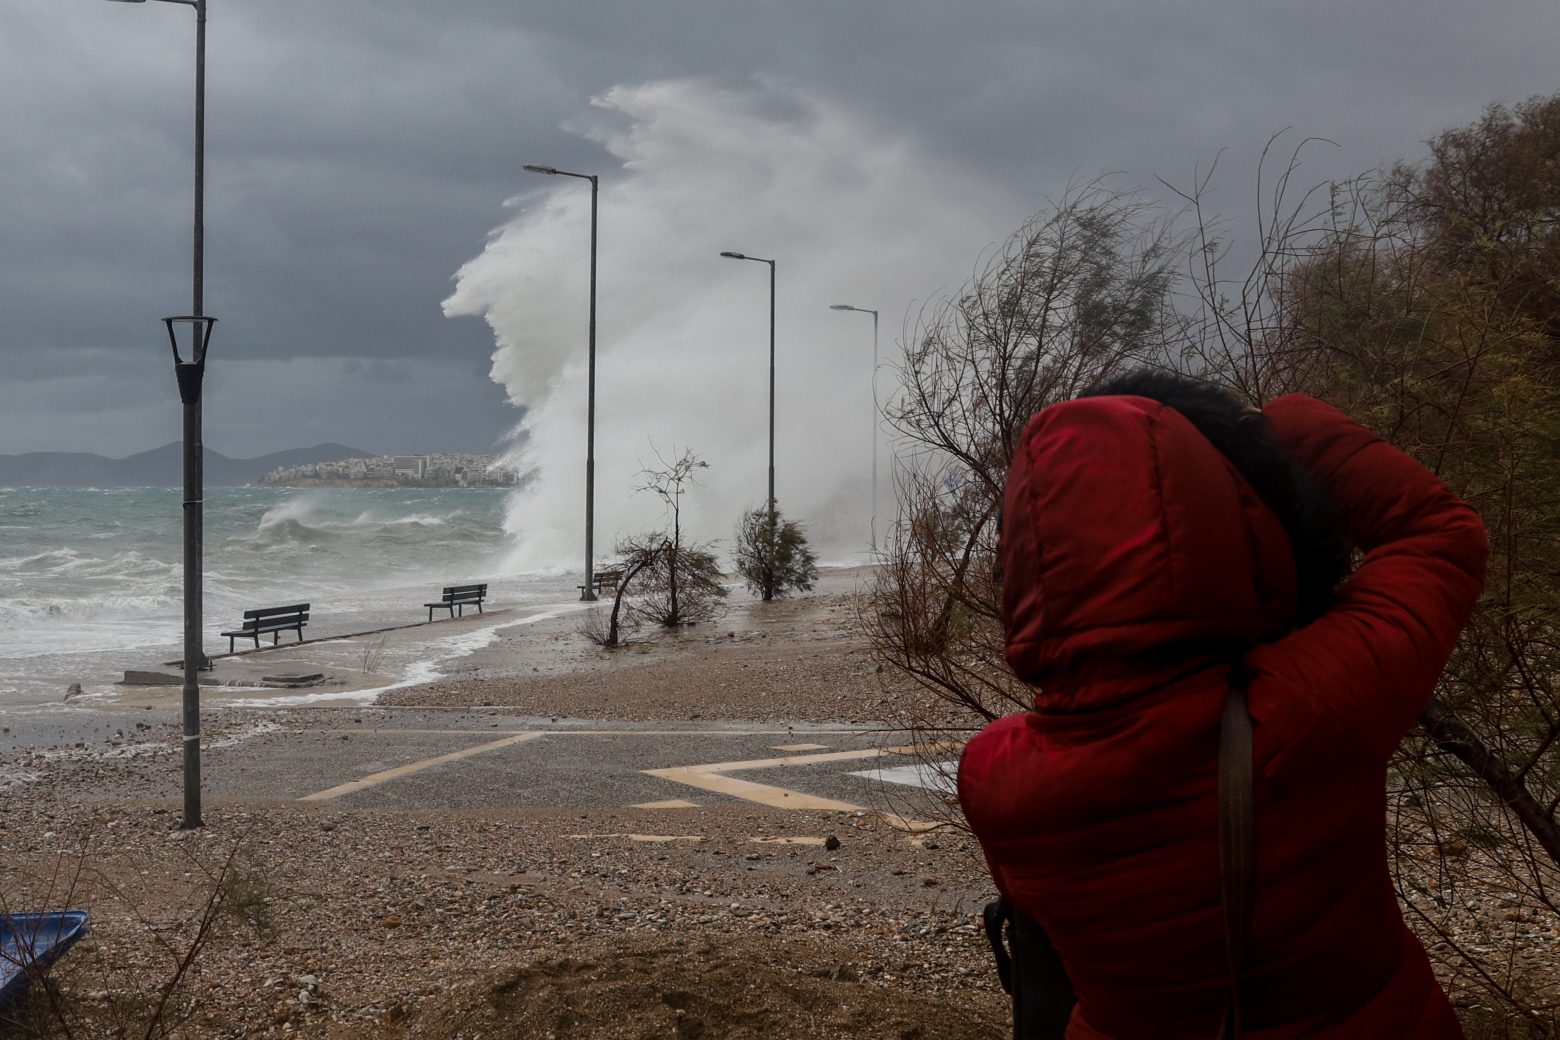 Κακοκαιρία - Ισχυροί άνεμοι, πλημμύρες, και απεγκλωβισμοί - Πού θα «χτυπήσει» την Κυριακή